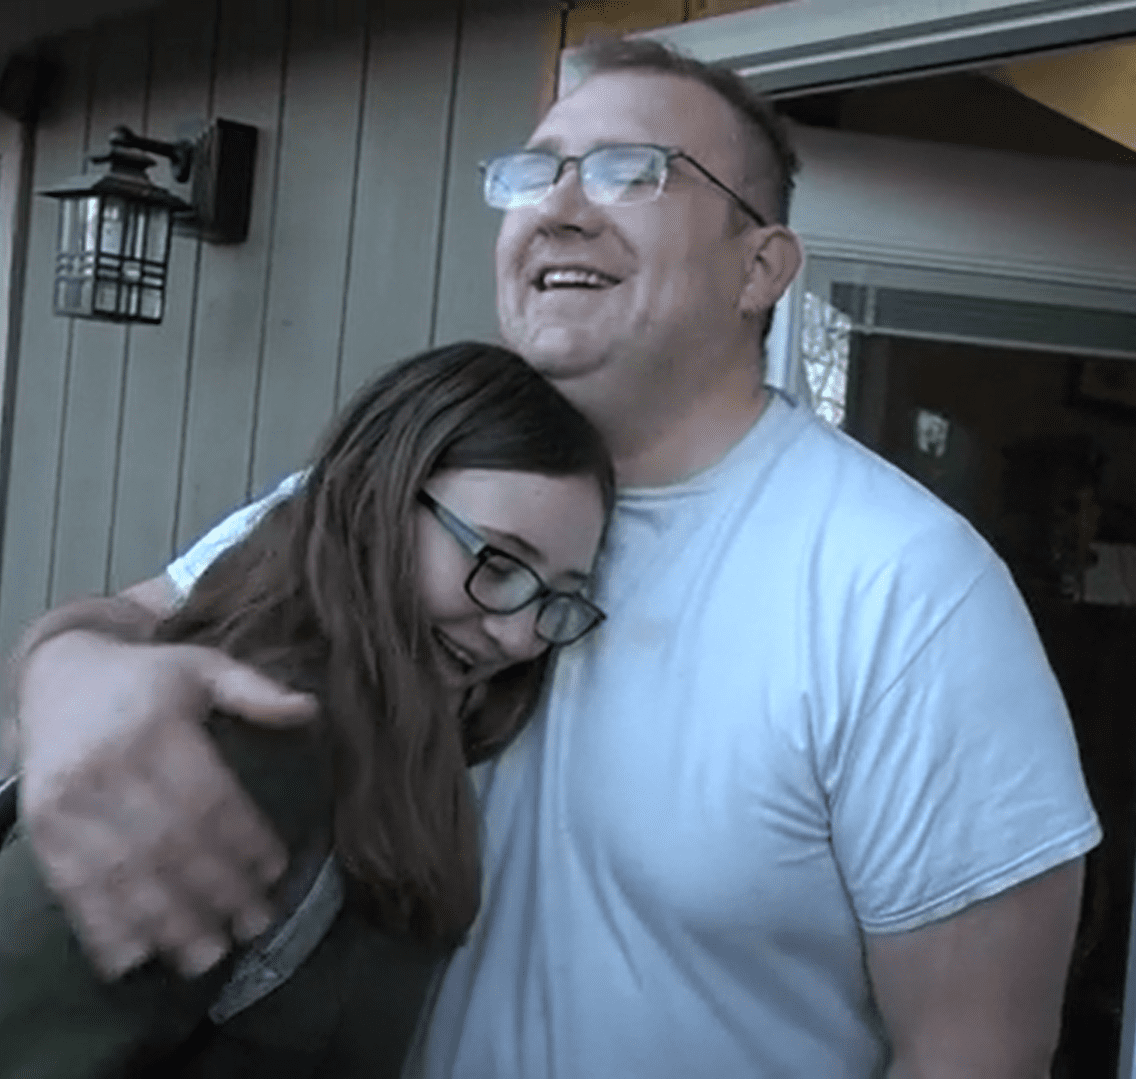 Emily legte ihren Kopf auf die Brust ihres Vaters, nachdem sie ihm die gute Nachricht überbracht hatte. | Quelle: Youtube.com/East Idaho News